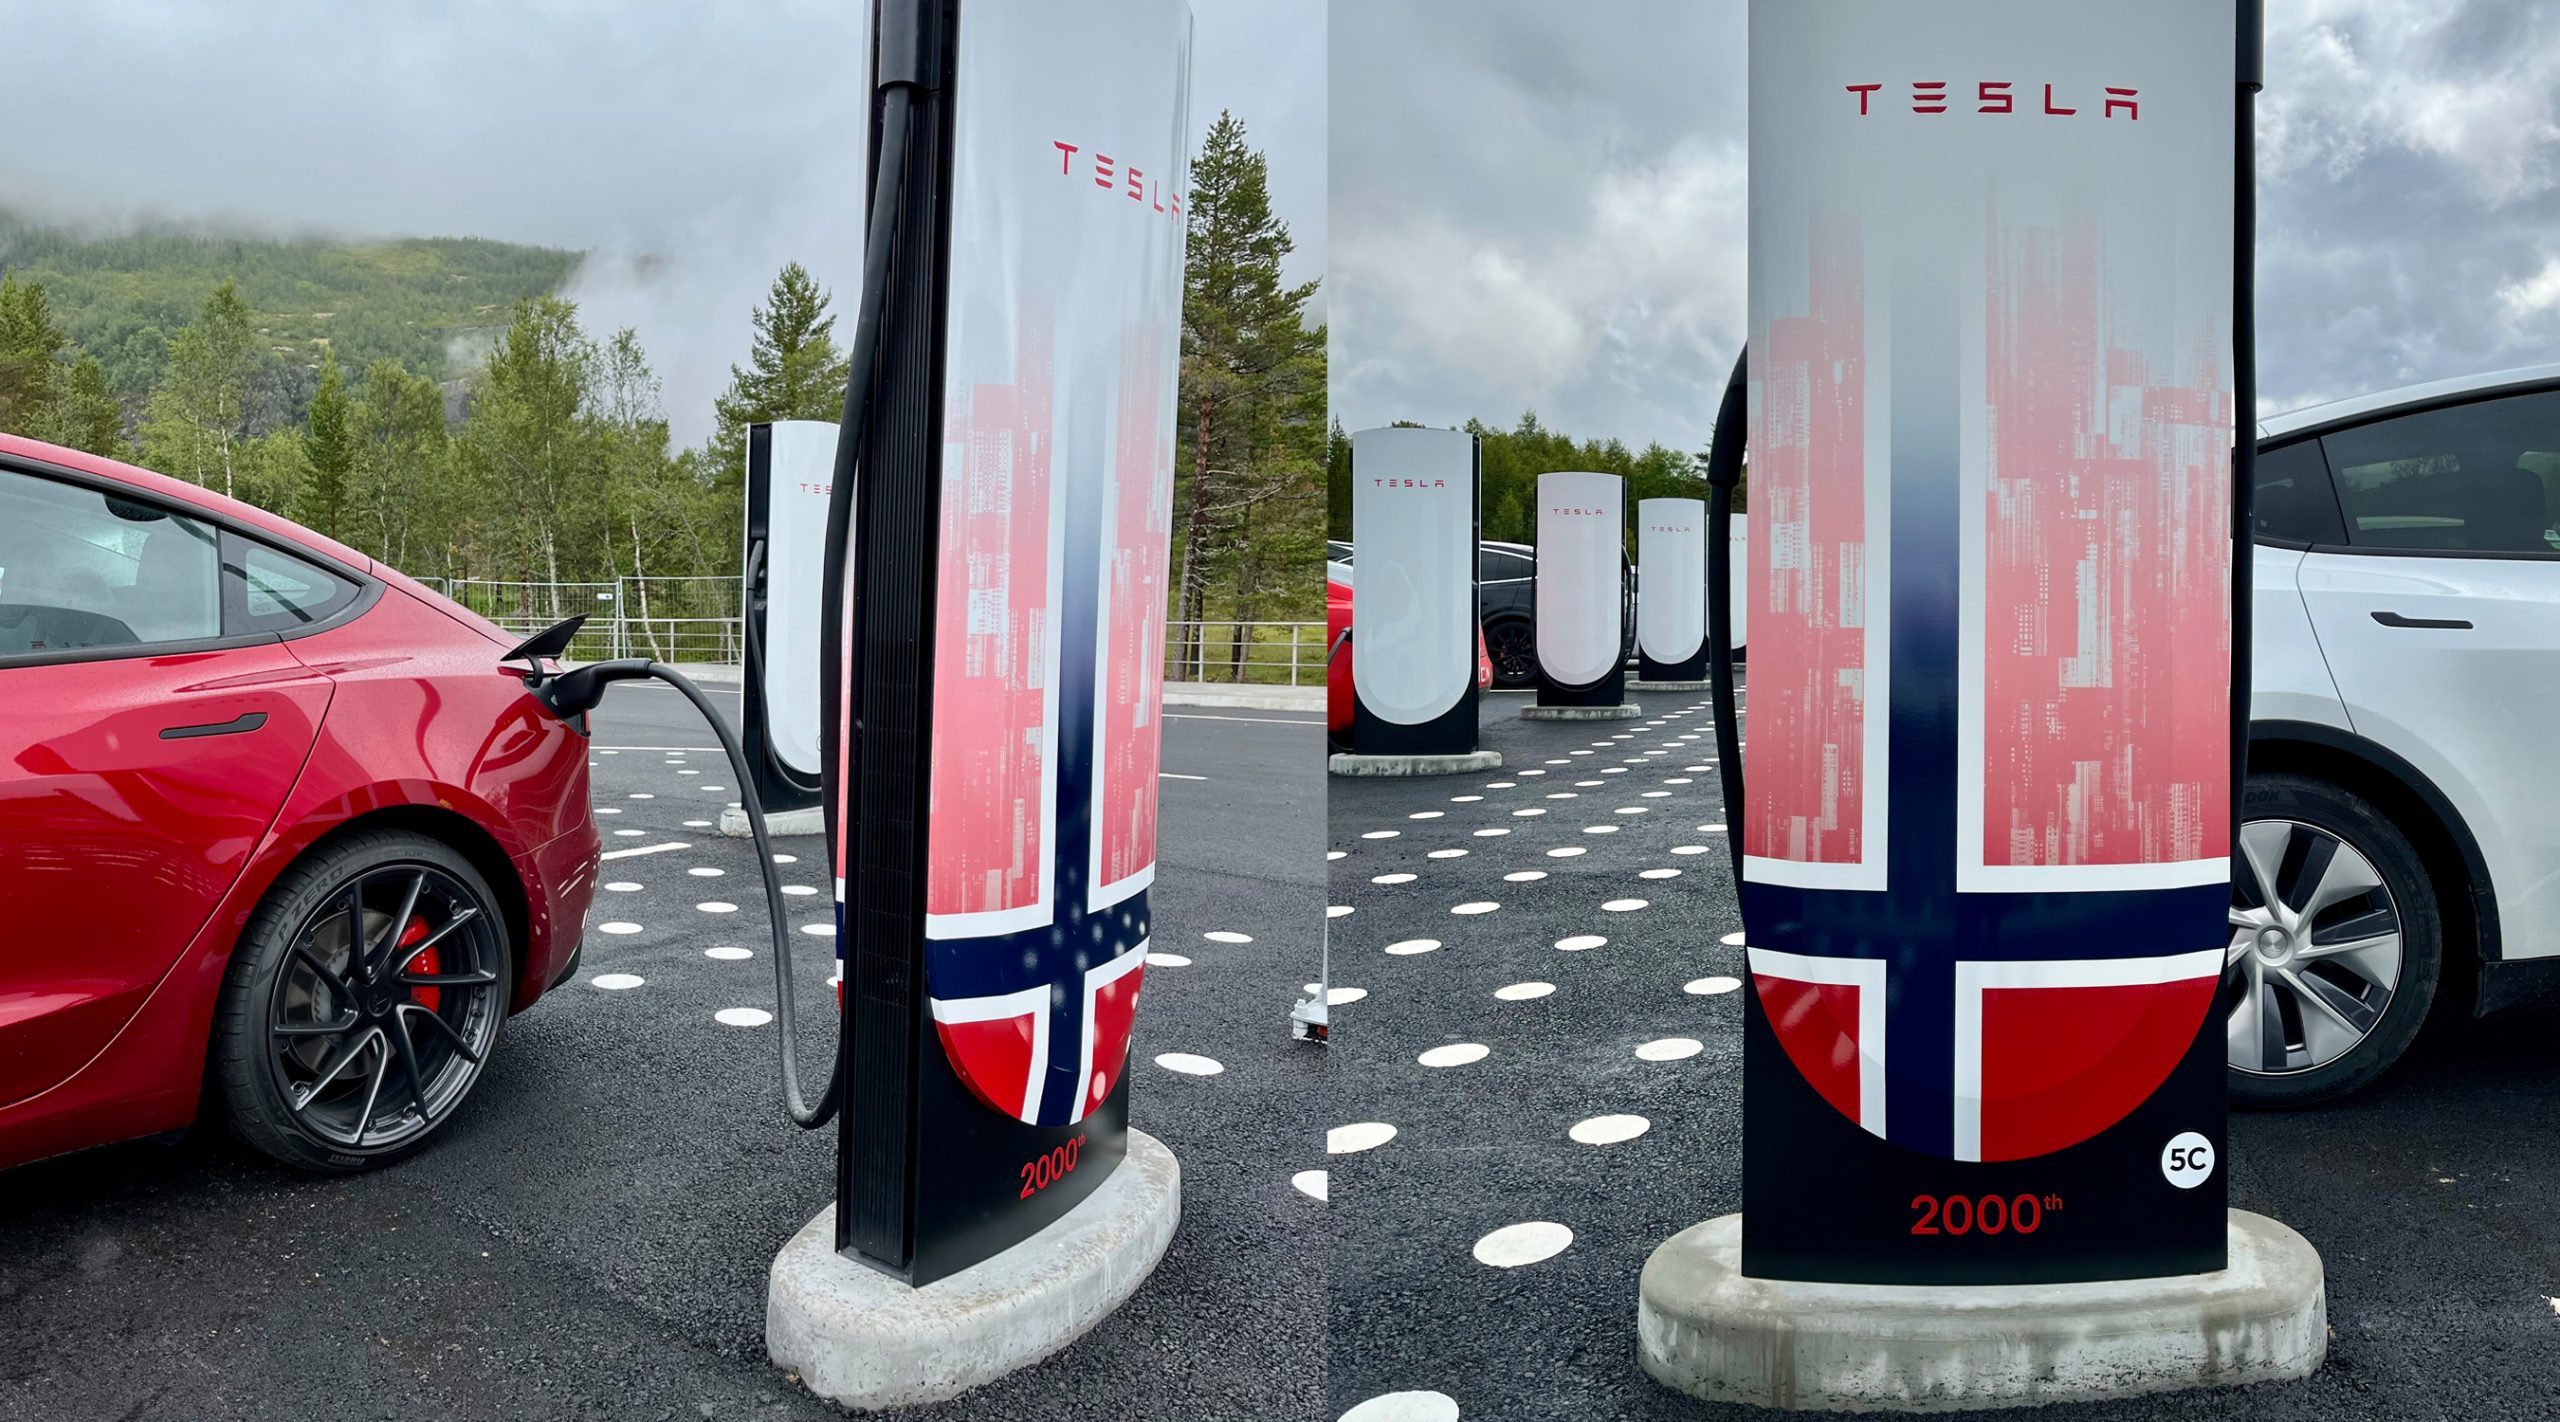 Tesla Now Has 2000 Charging Stalls in Norway